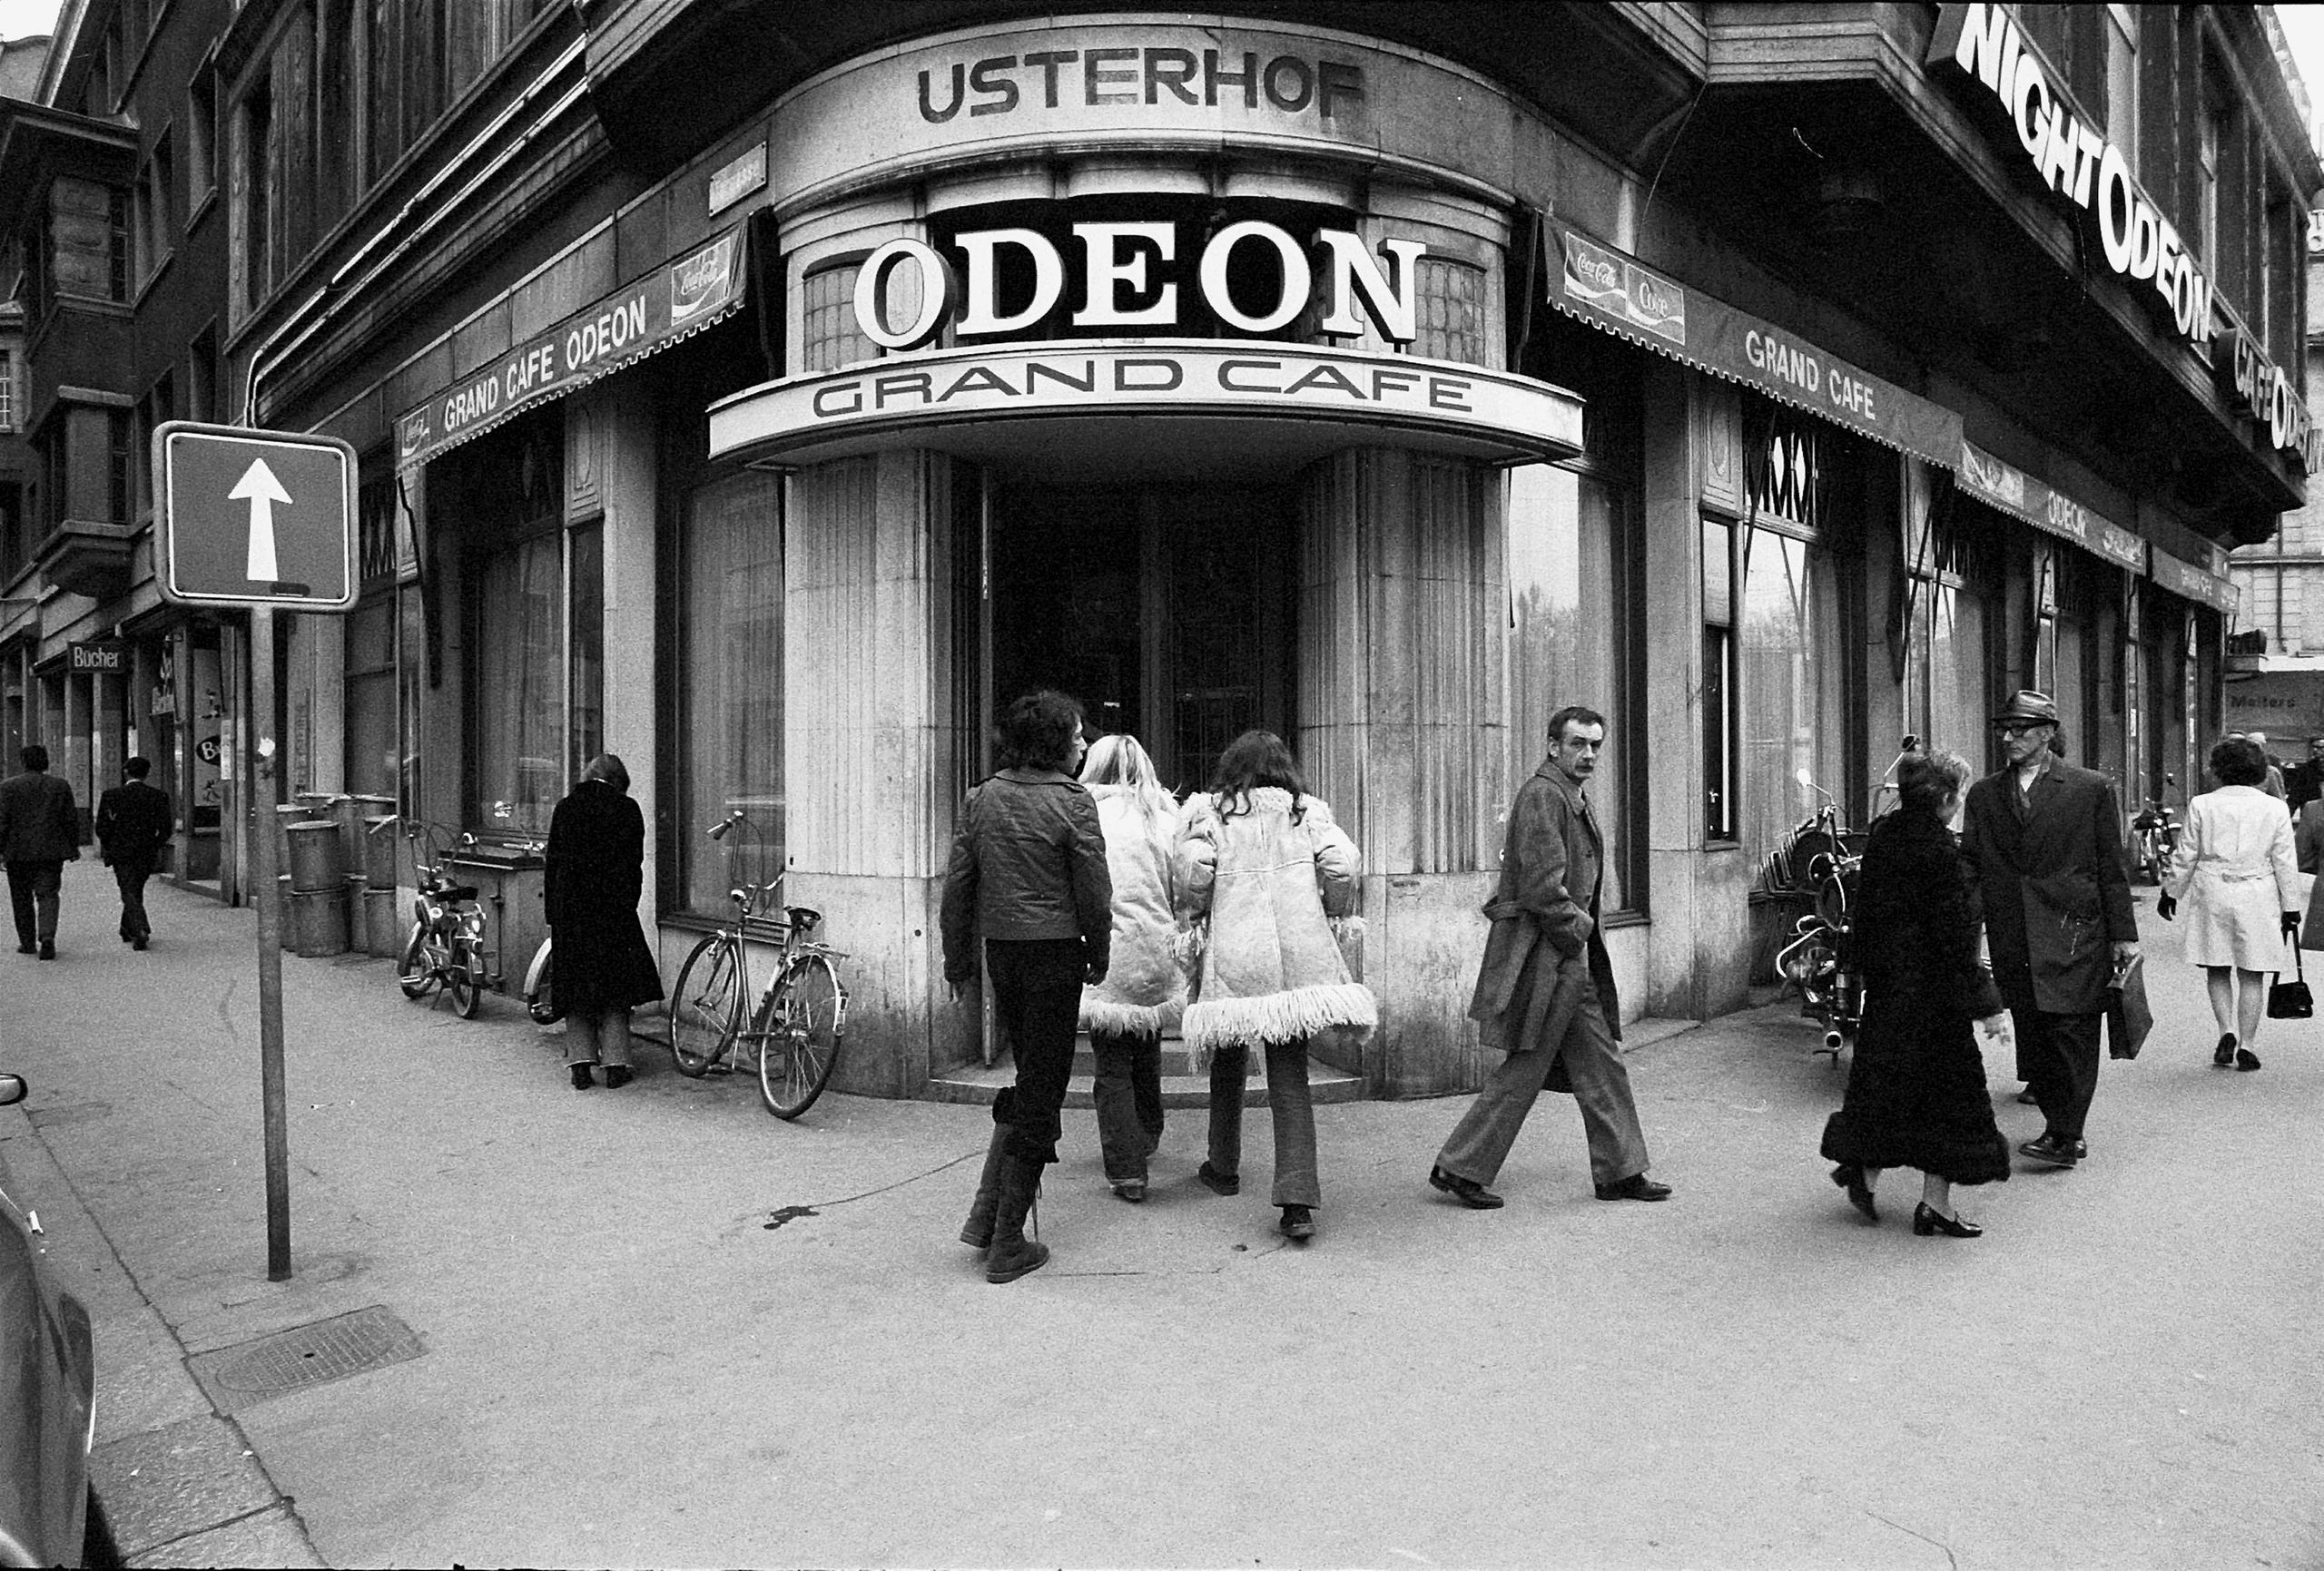 café odeon entrance in 1971